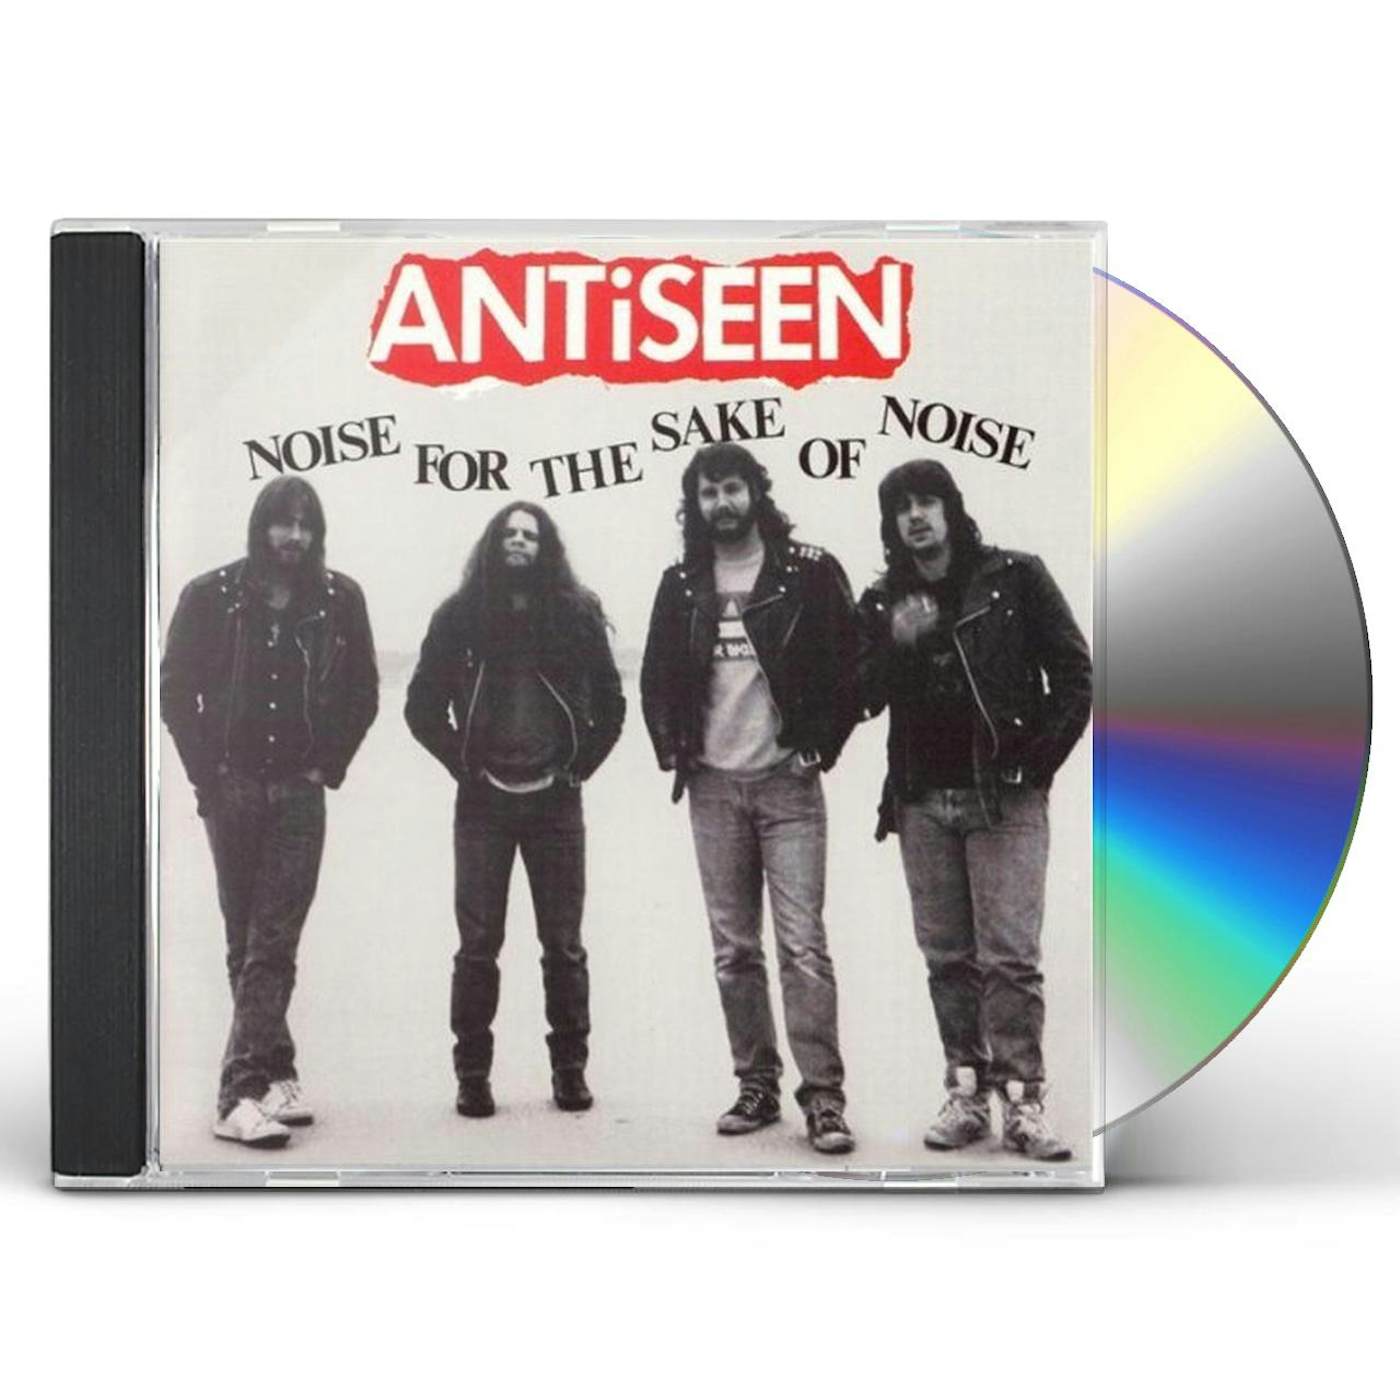 Antiseen NOISE FOR THE SAKE OF NOISE CD